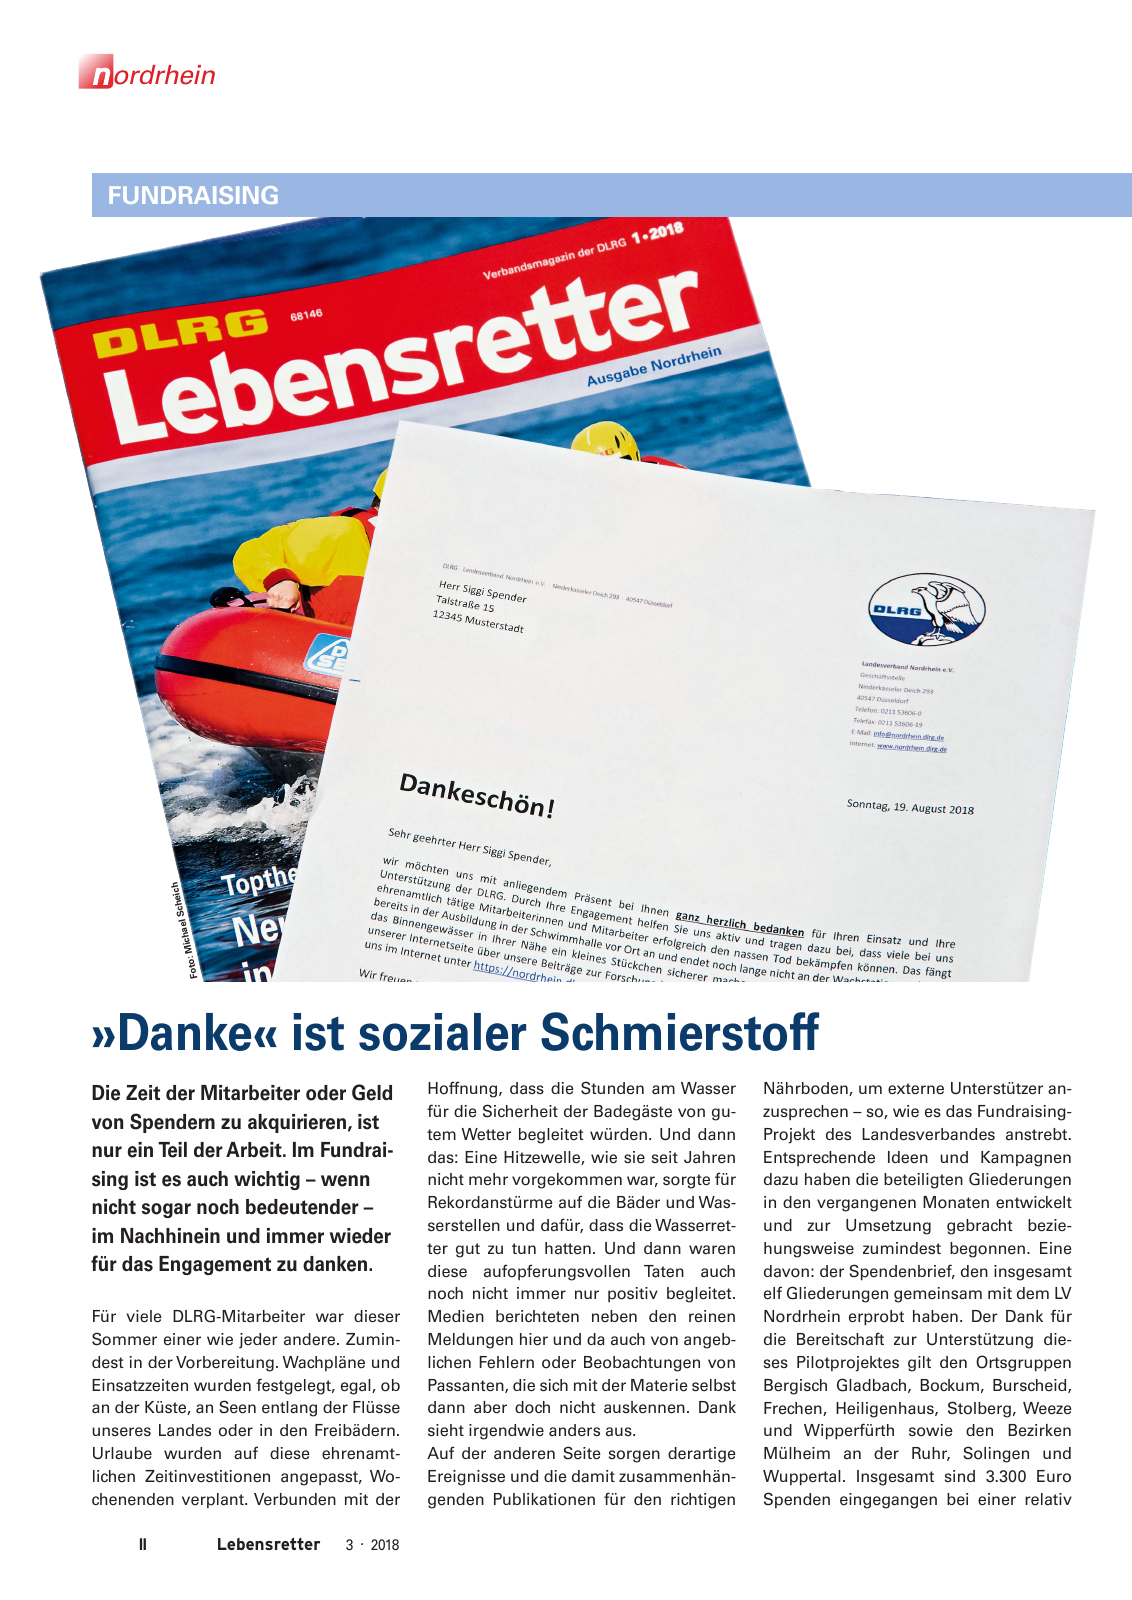 Vorschau Lebensretter 3/2018 - Regionalausgabe Nordrhein Seite 4